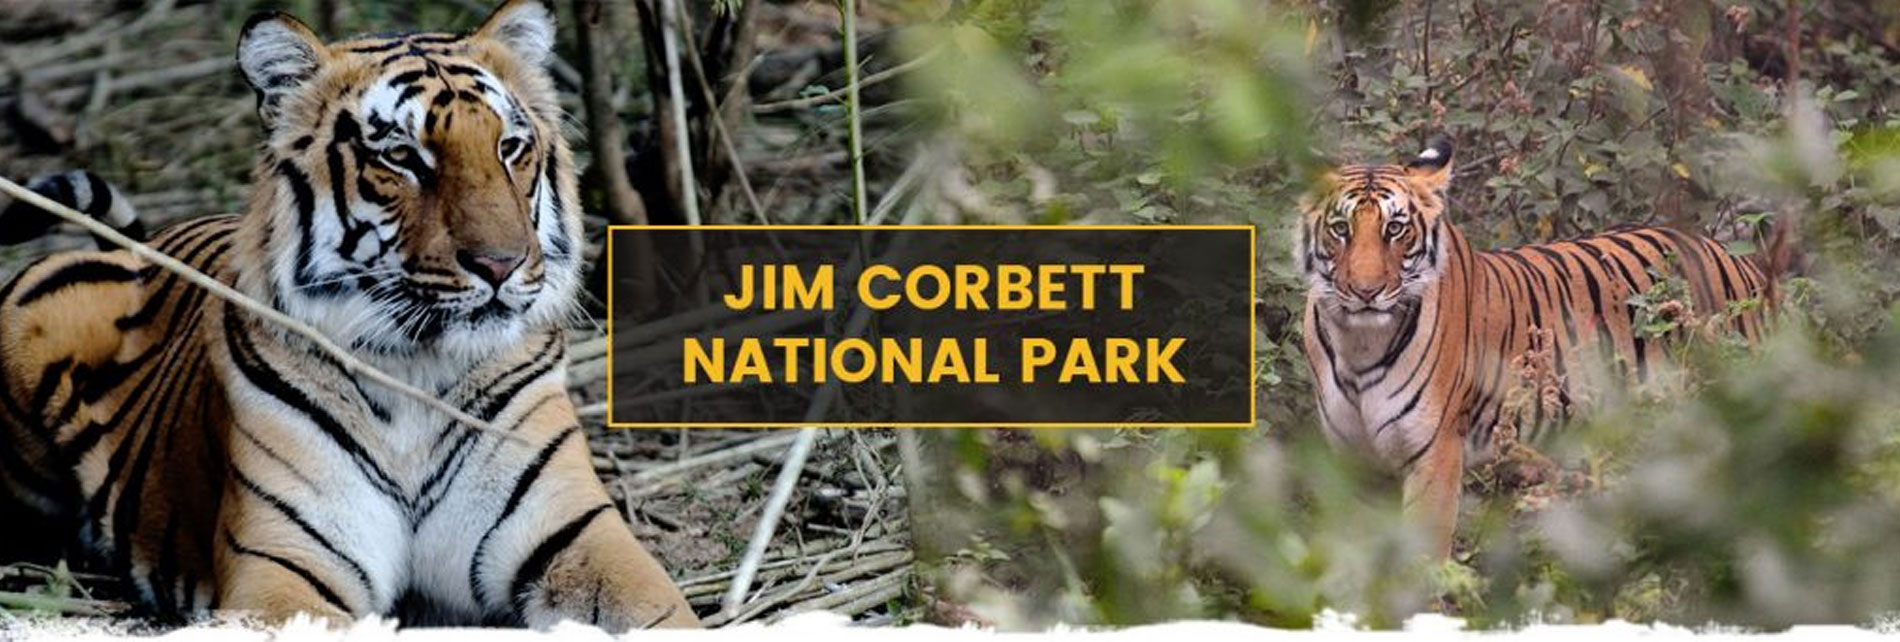 About Jim Corbett National Park Uttarakhand India